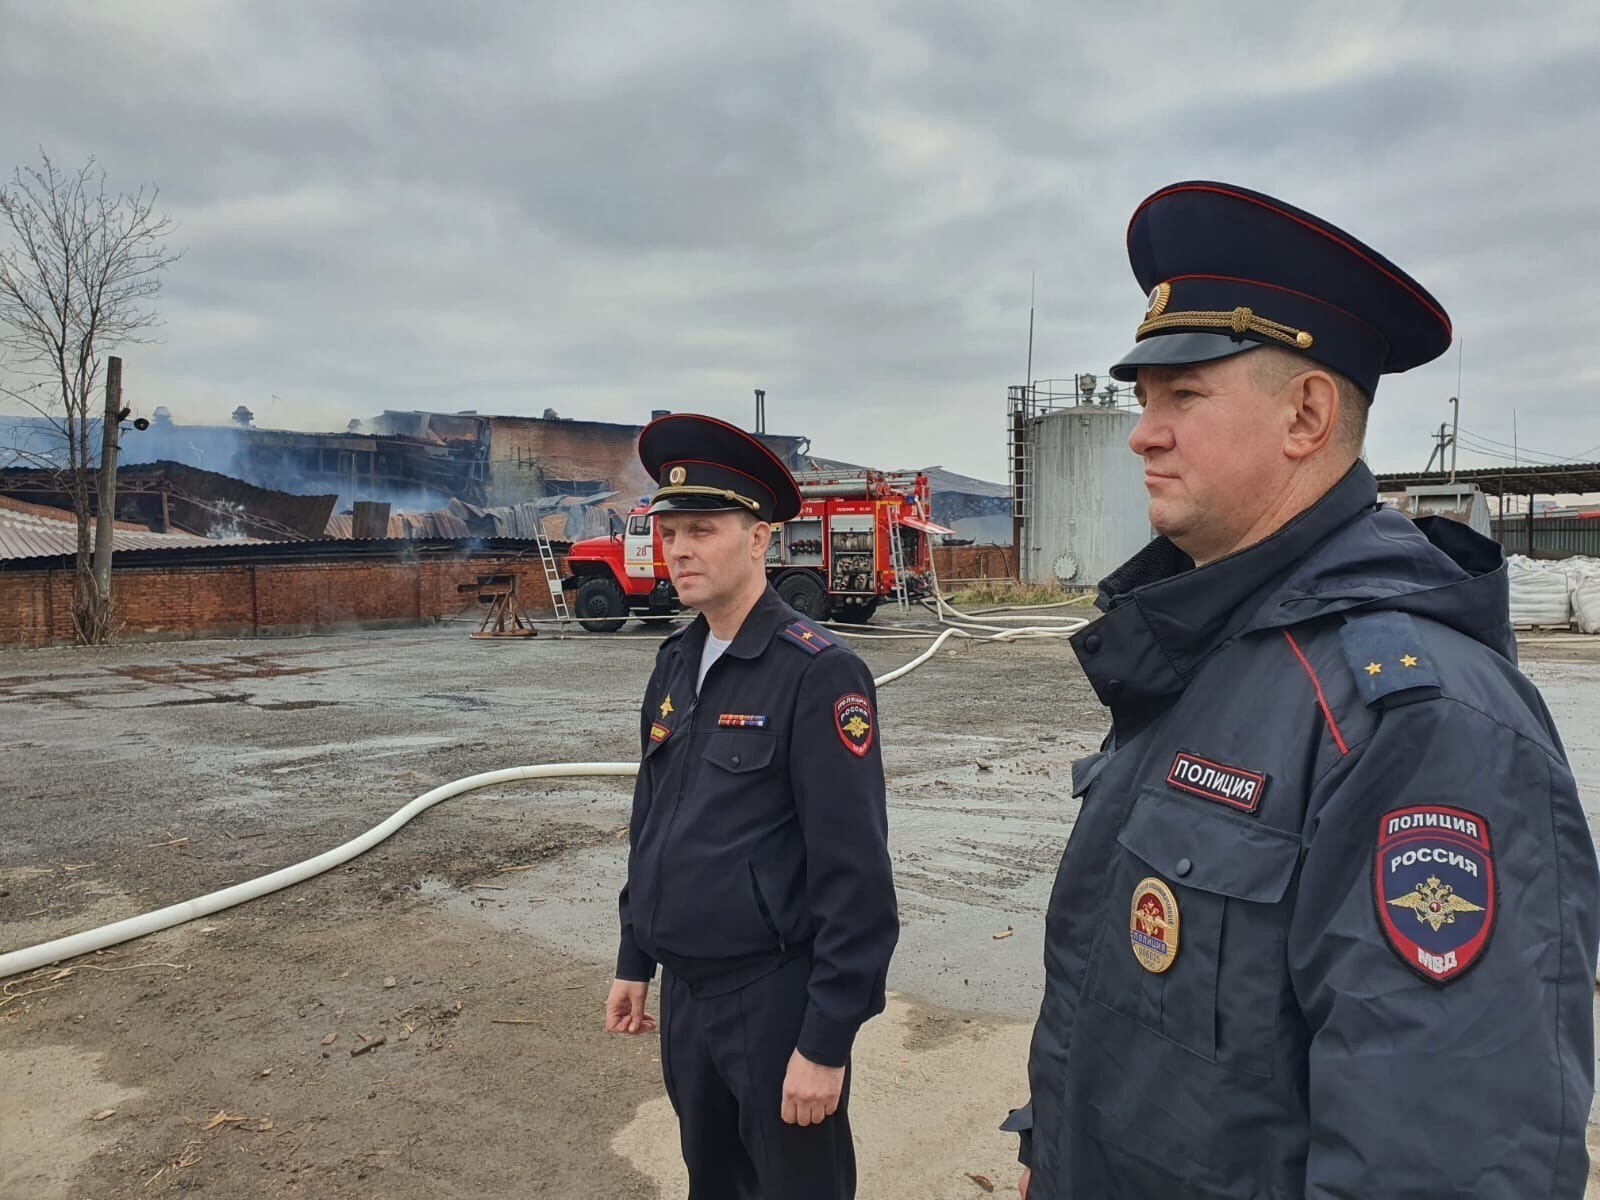 Движение возобновлено на участке дороги в Ростовской области после пожара на складе целлюлозы